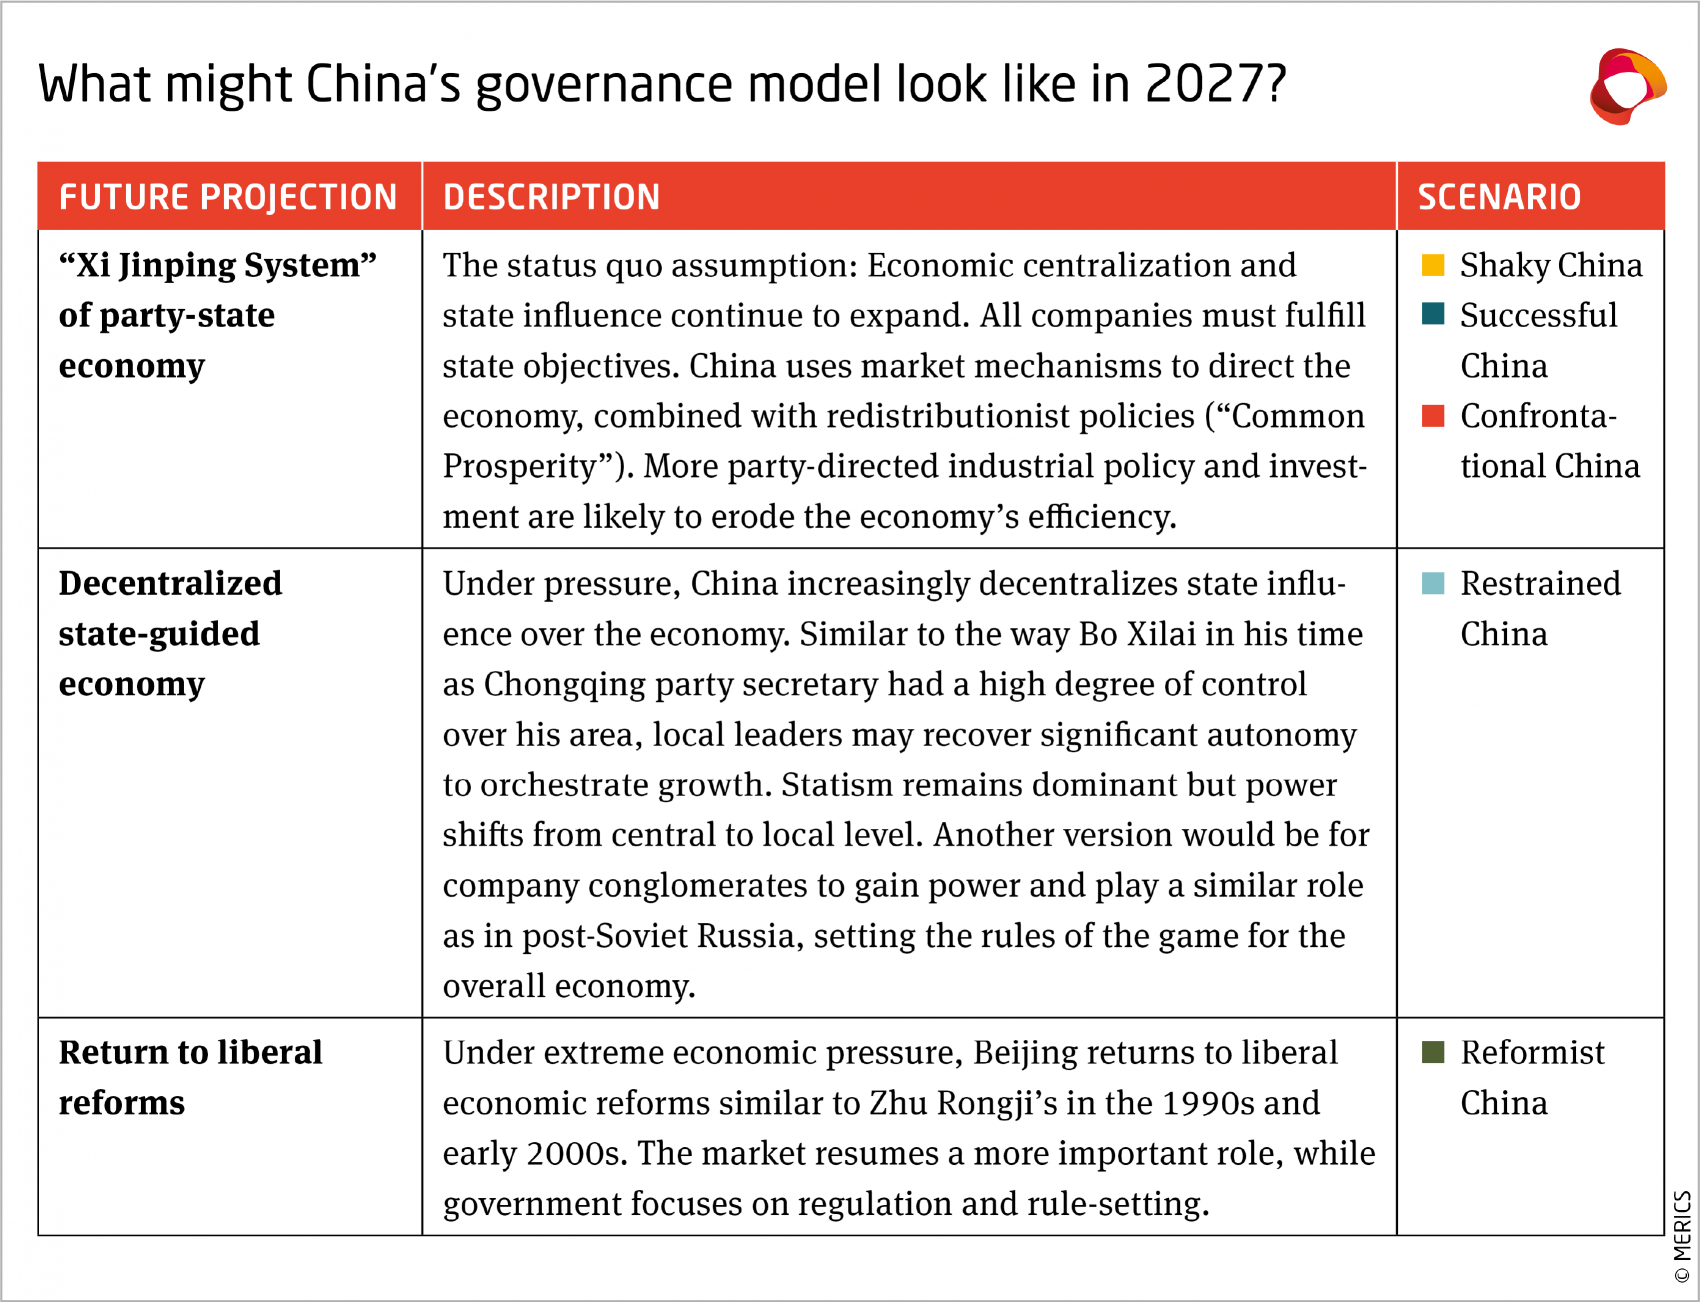 China’s economic governance model in 2027